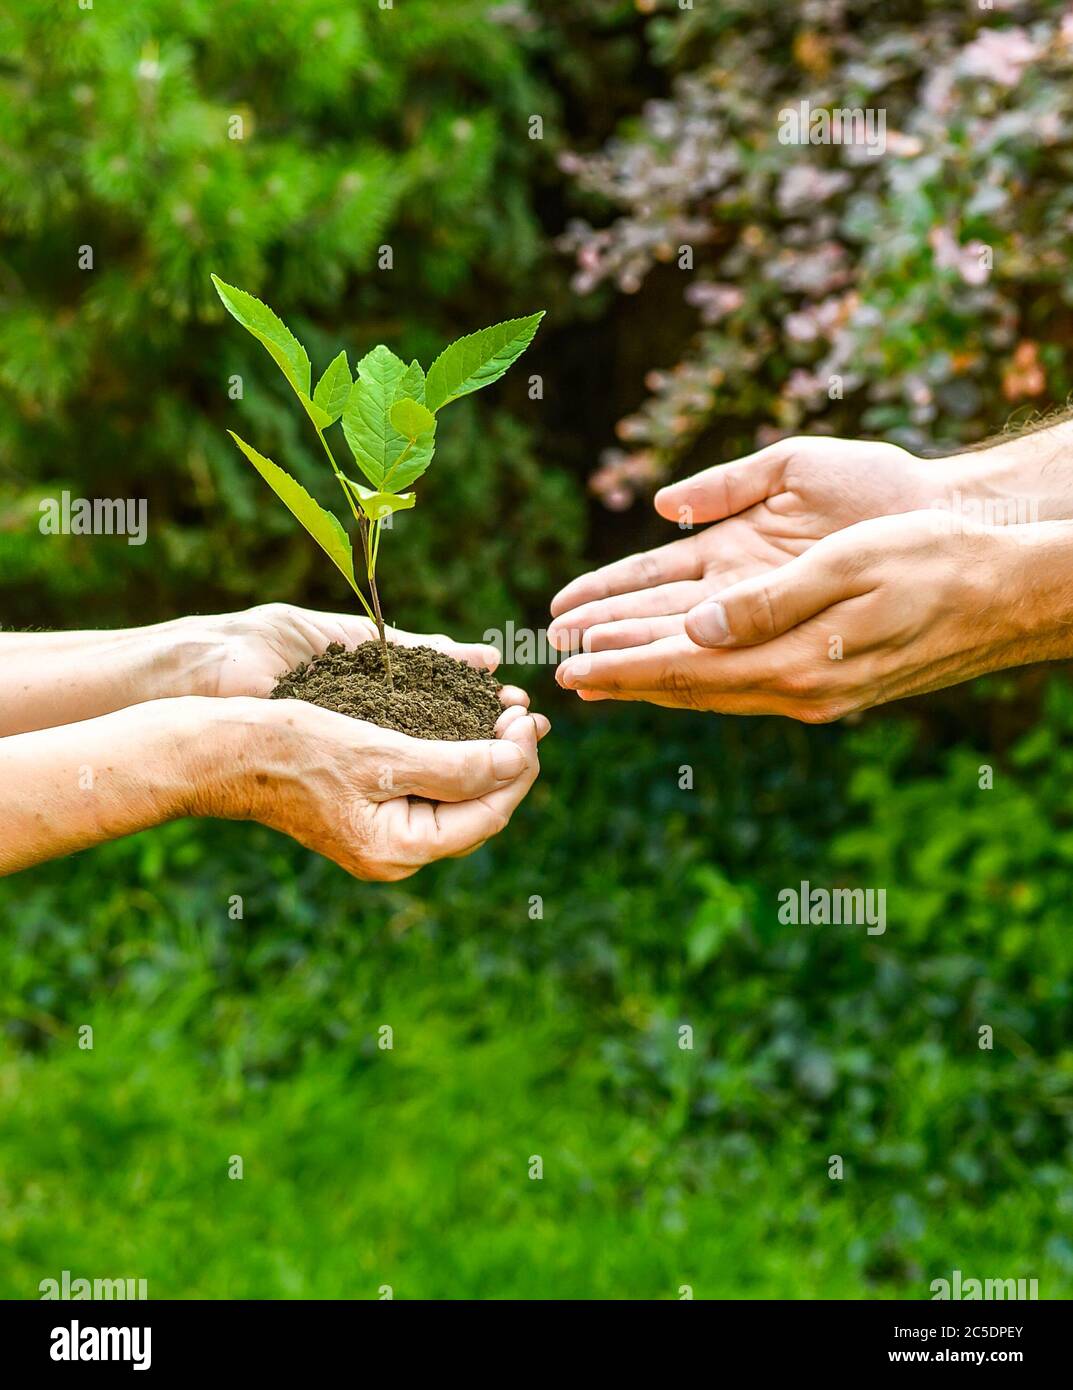 Jeunes et seniors tenant une plante verte. Une femme âgée aux mains froissées donne une plante verte à un jeune homme en plein soleil, sur fond vert flou Banque D'Images